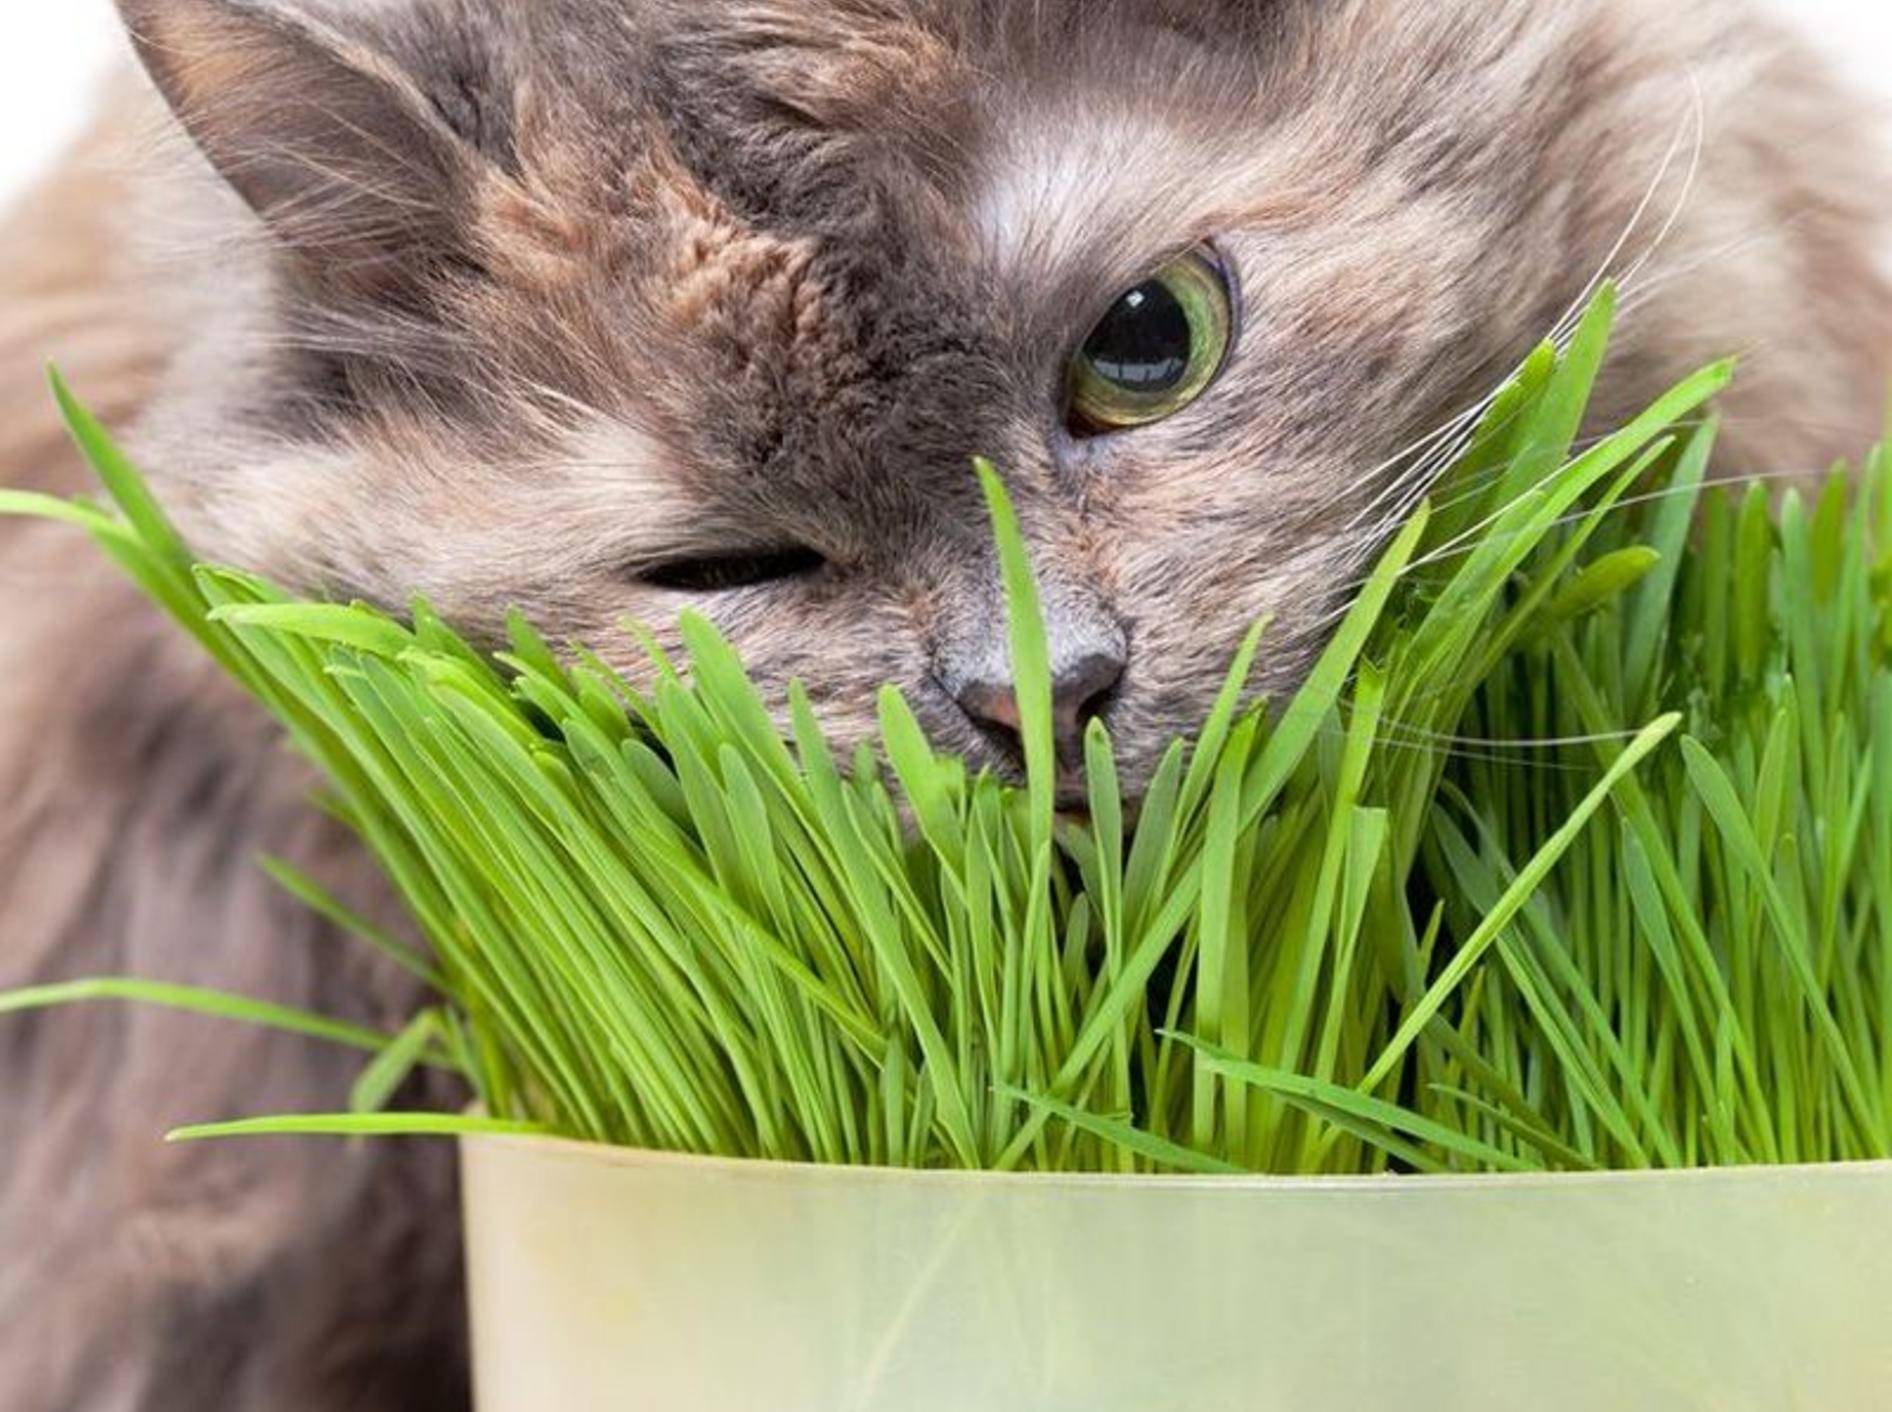 "Mmmh, lecker!": Diese Katze lässt sich das Katzengras schmecken – Bild: Shutterstock / Discovod